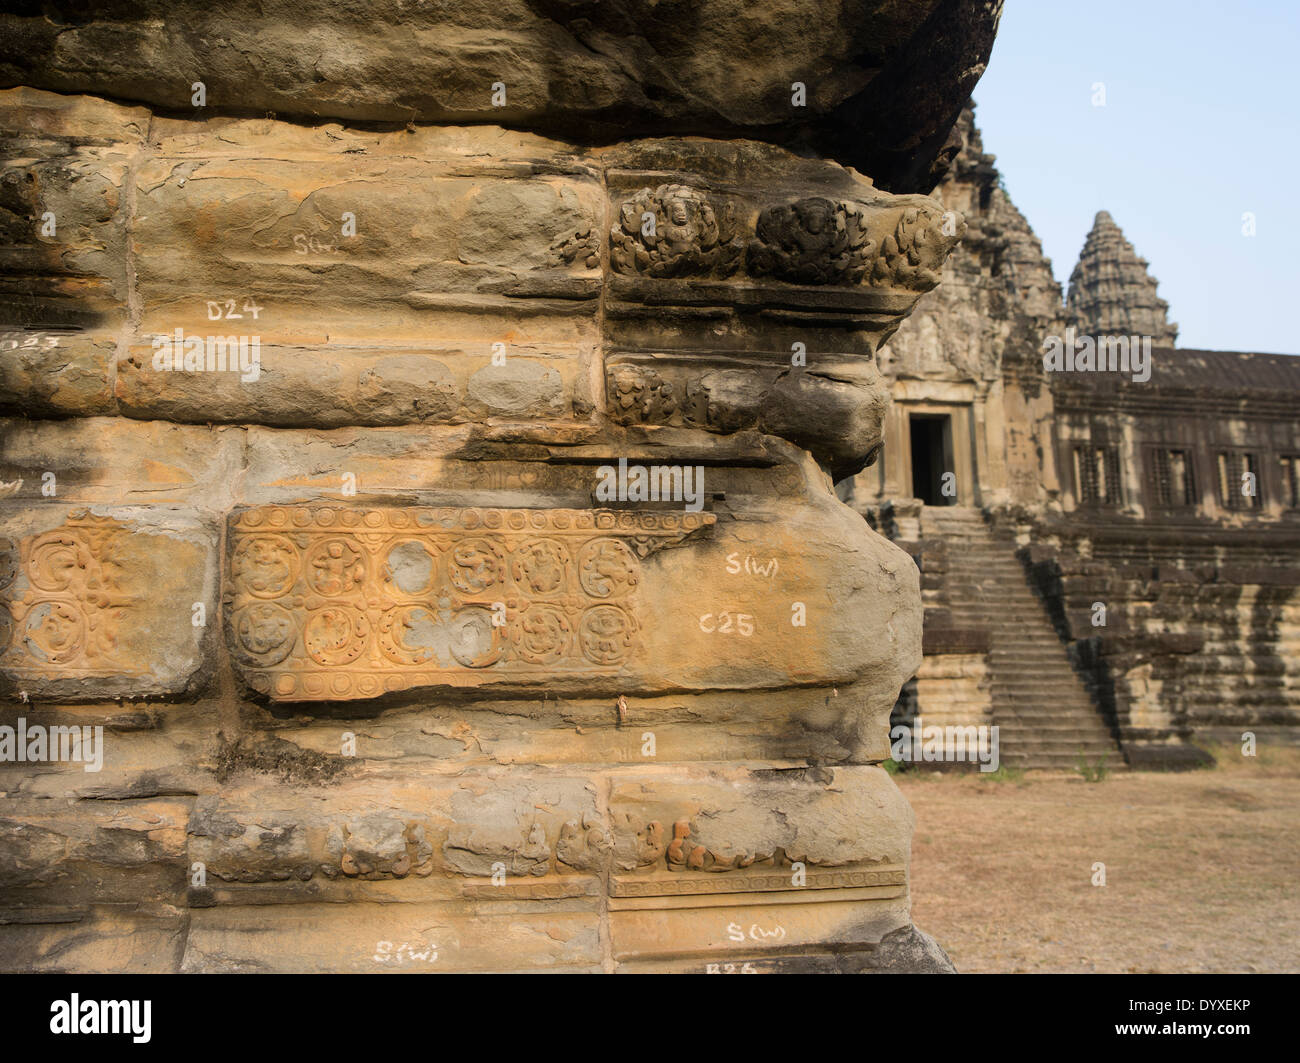 Números y letras escritas en piedras documentar su posición en Angkor Wat, Patrimonio de la Humanidad de la UNESCO. En Siem Reap, Camboya Foto de stock